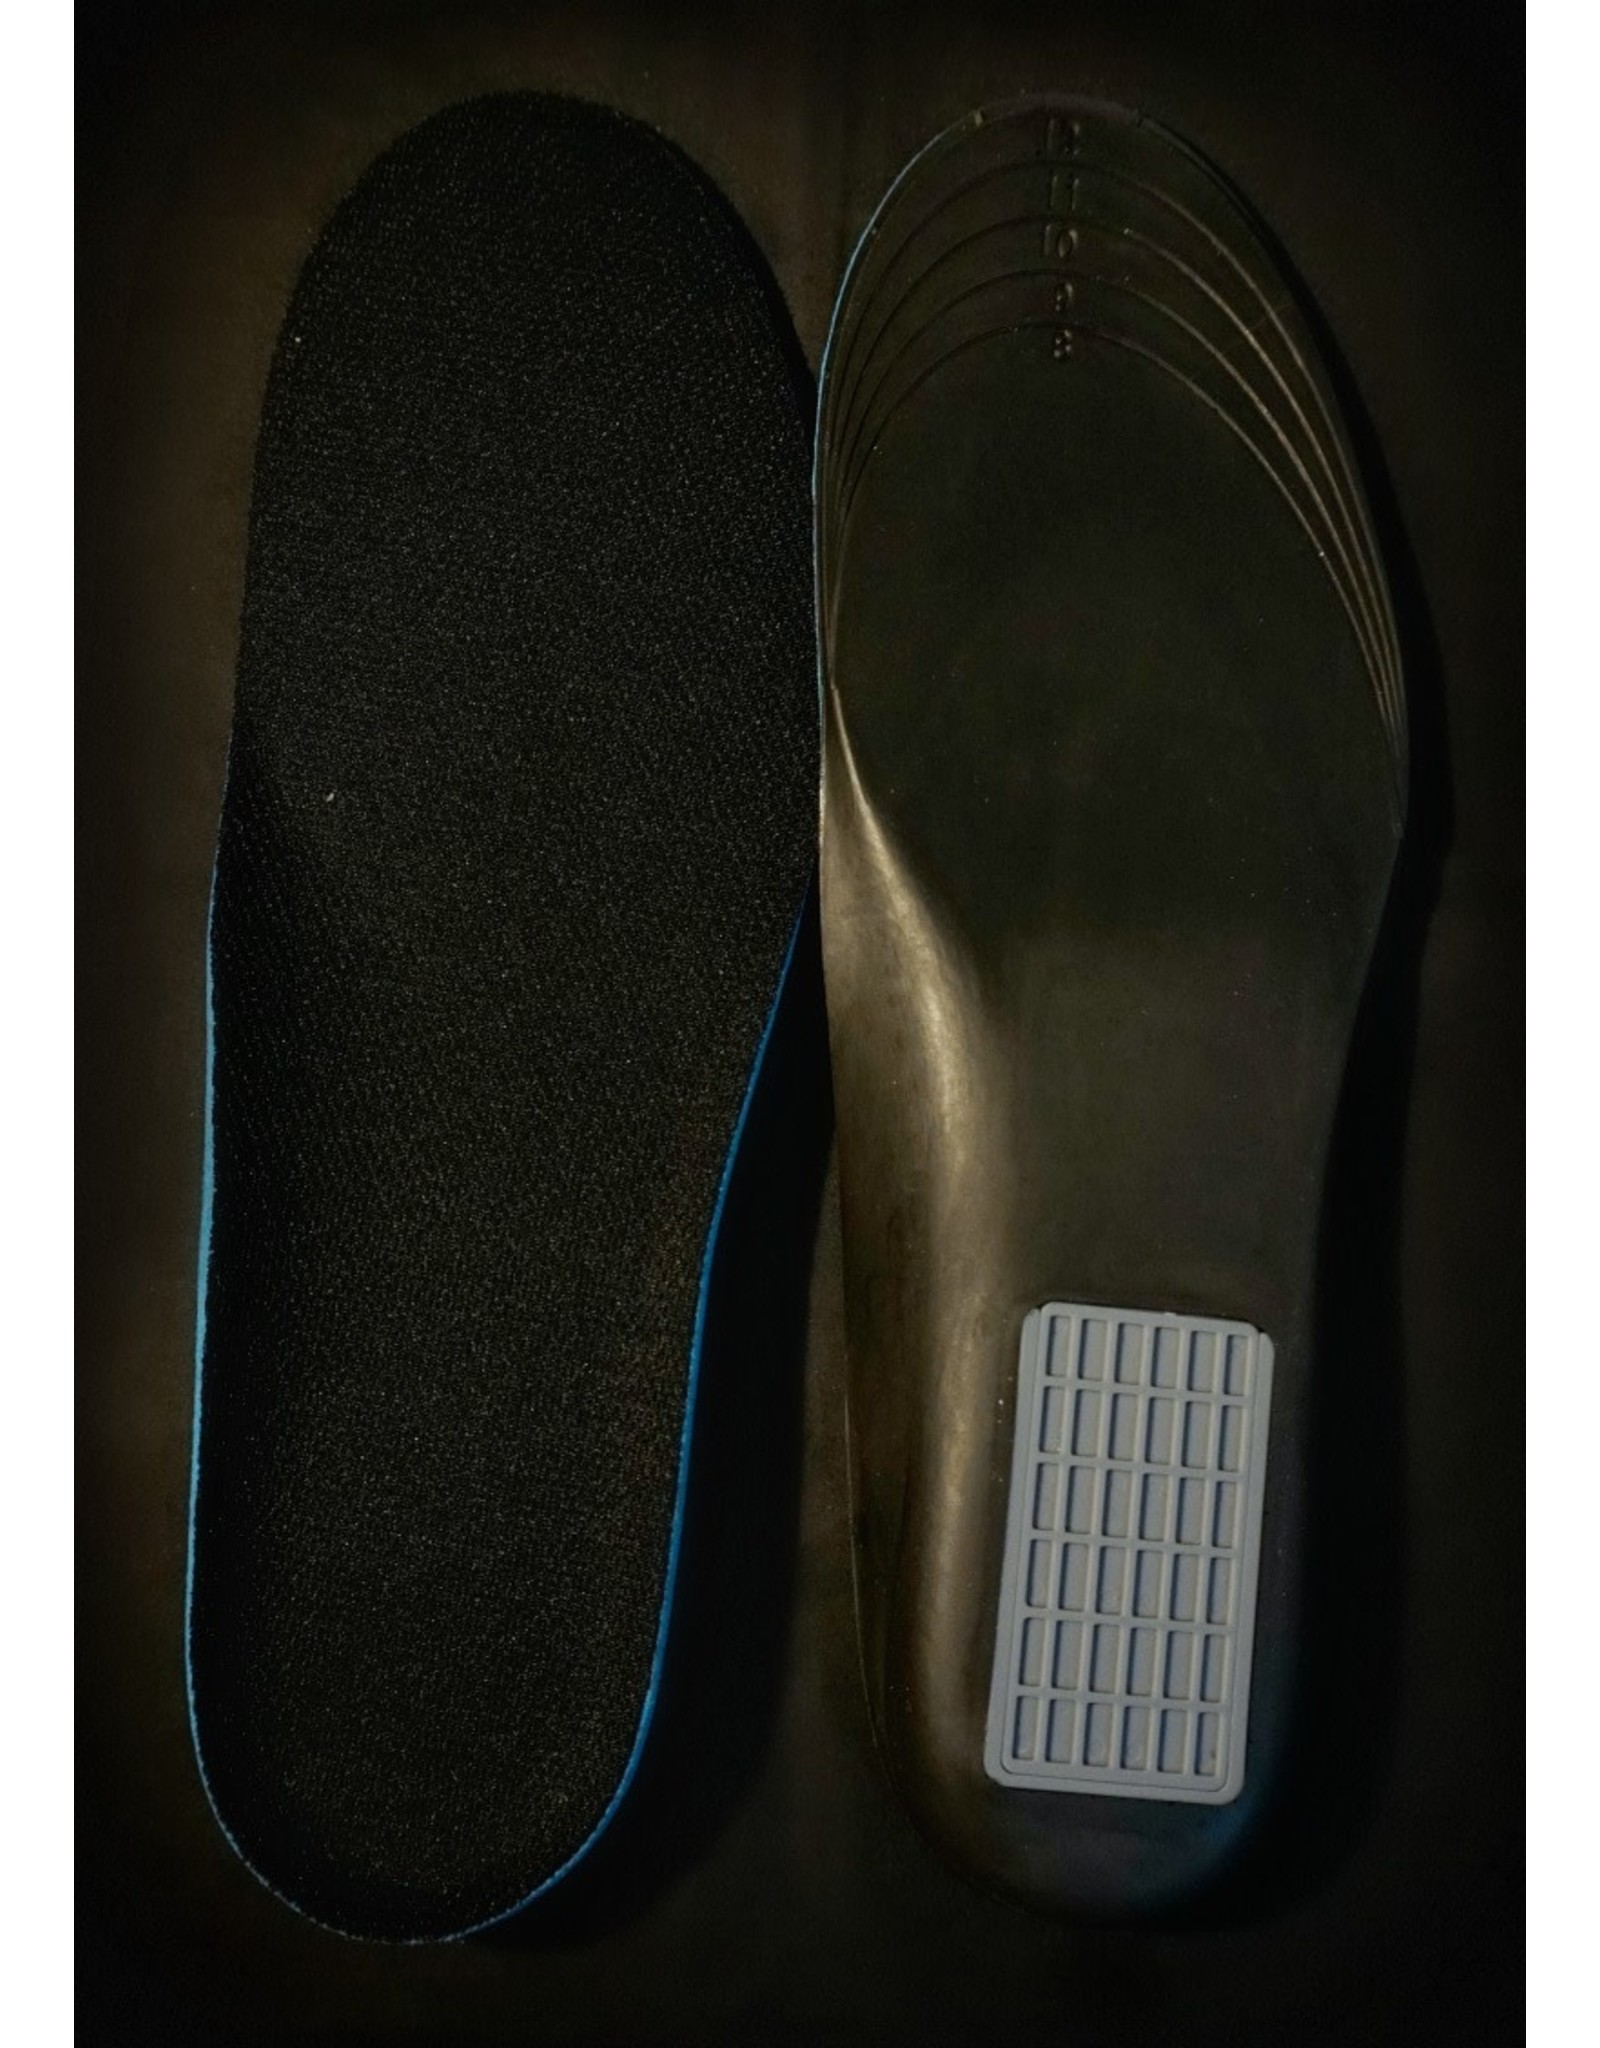 Men's Shoe Insole Diversion Safe